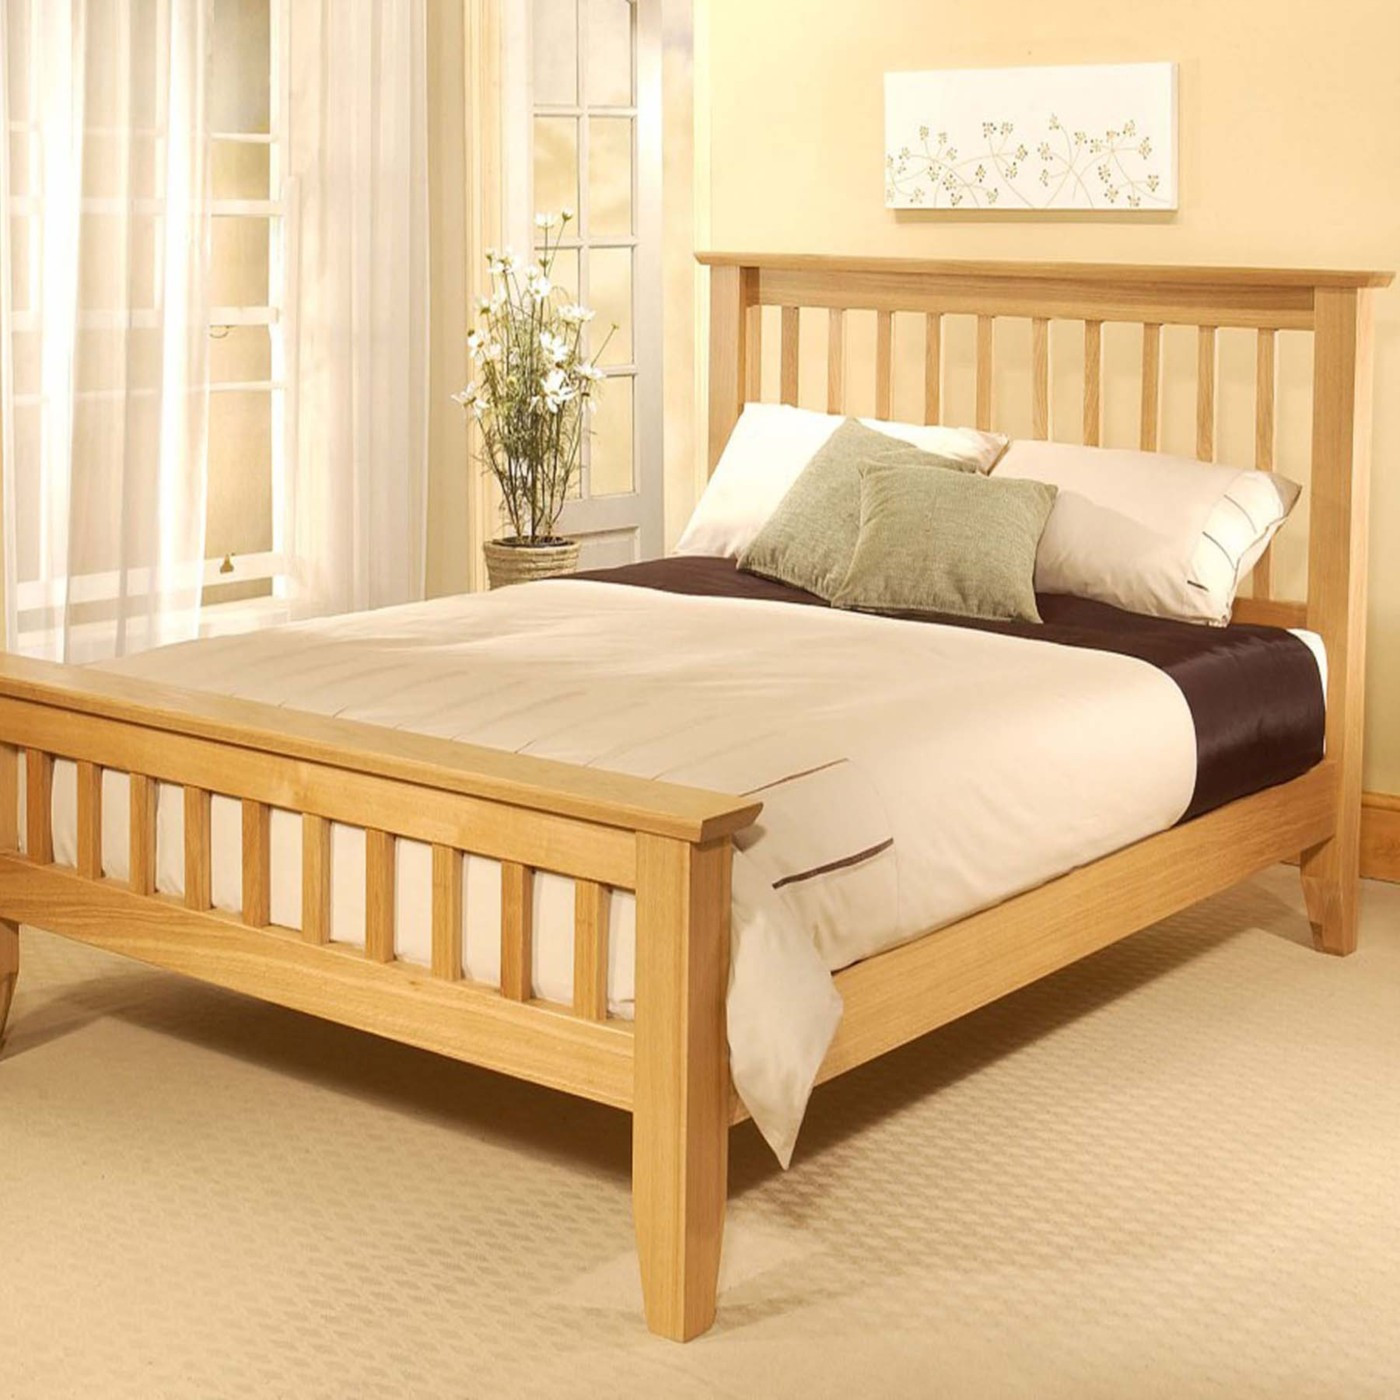 DIY Wooden Bed
 PDF Diy wooden bed frame designs DIY Free Plans Download